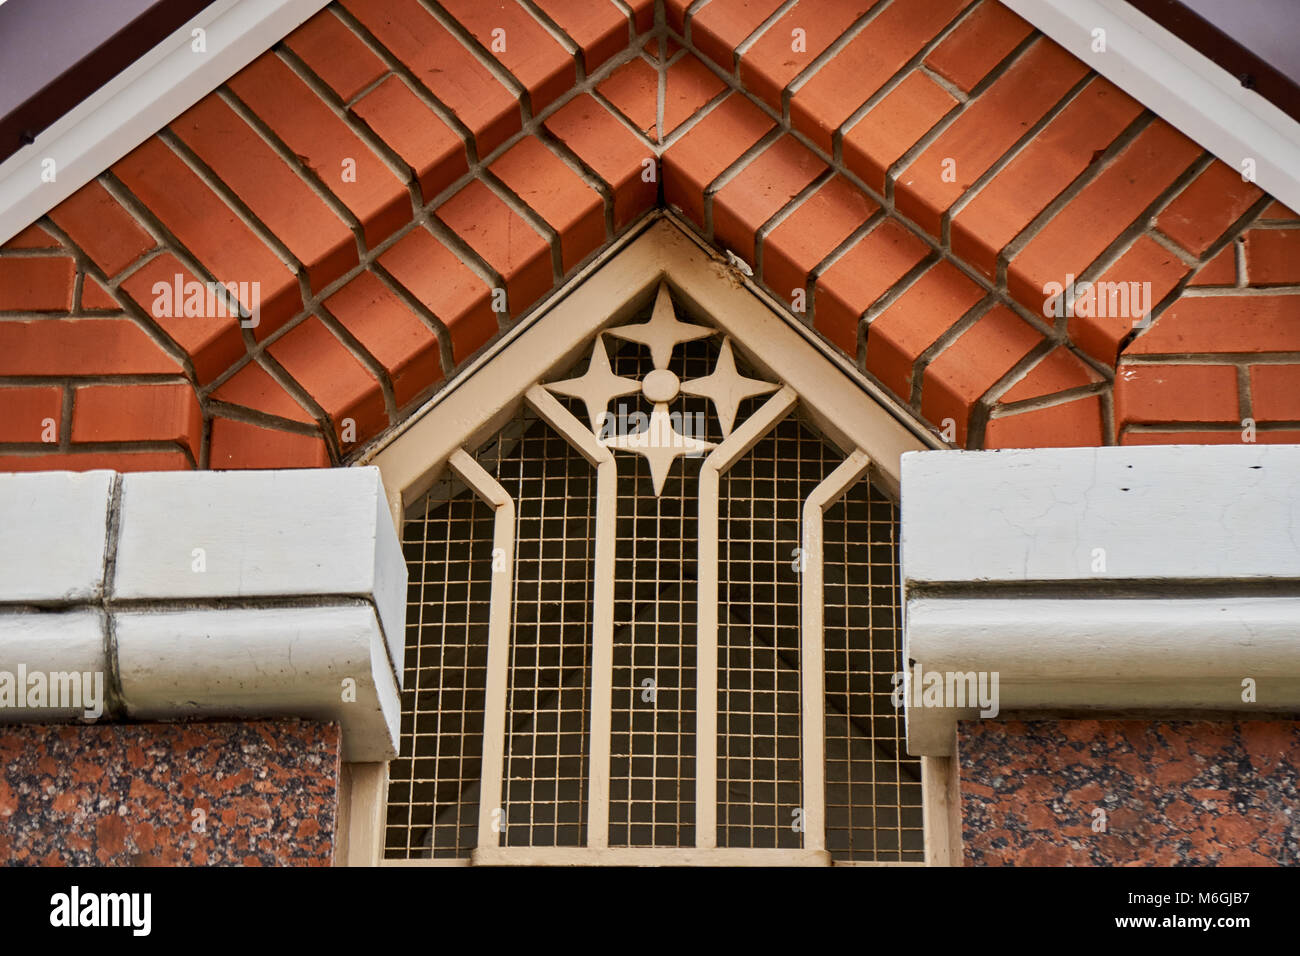 Treillis figuré élégant avec décorations sur la fenêtre située sous la mezzanine de toit en brique partie de la façade du bâtiment de cottage Banque D'Images